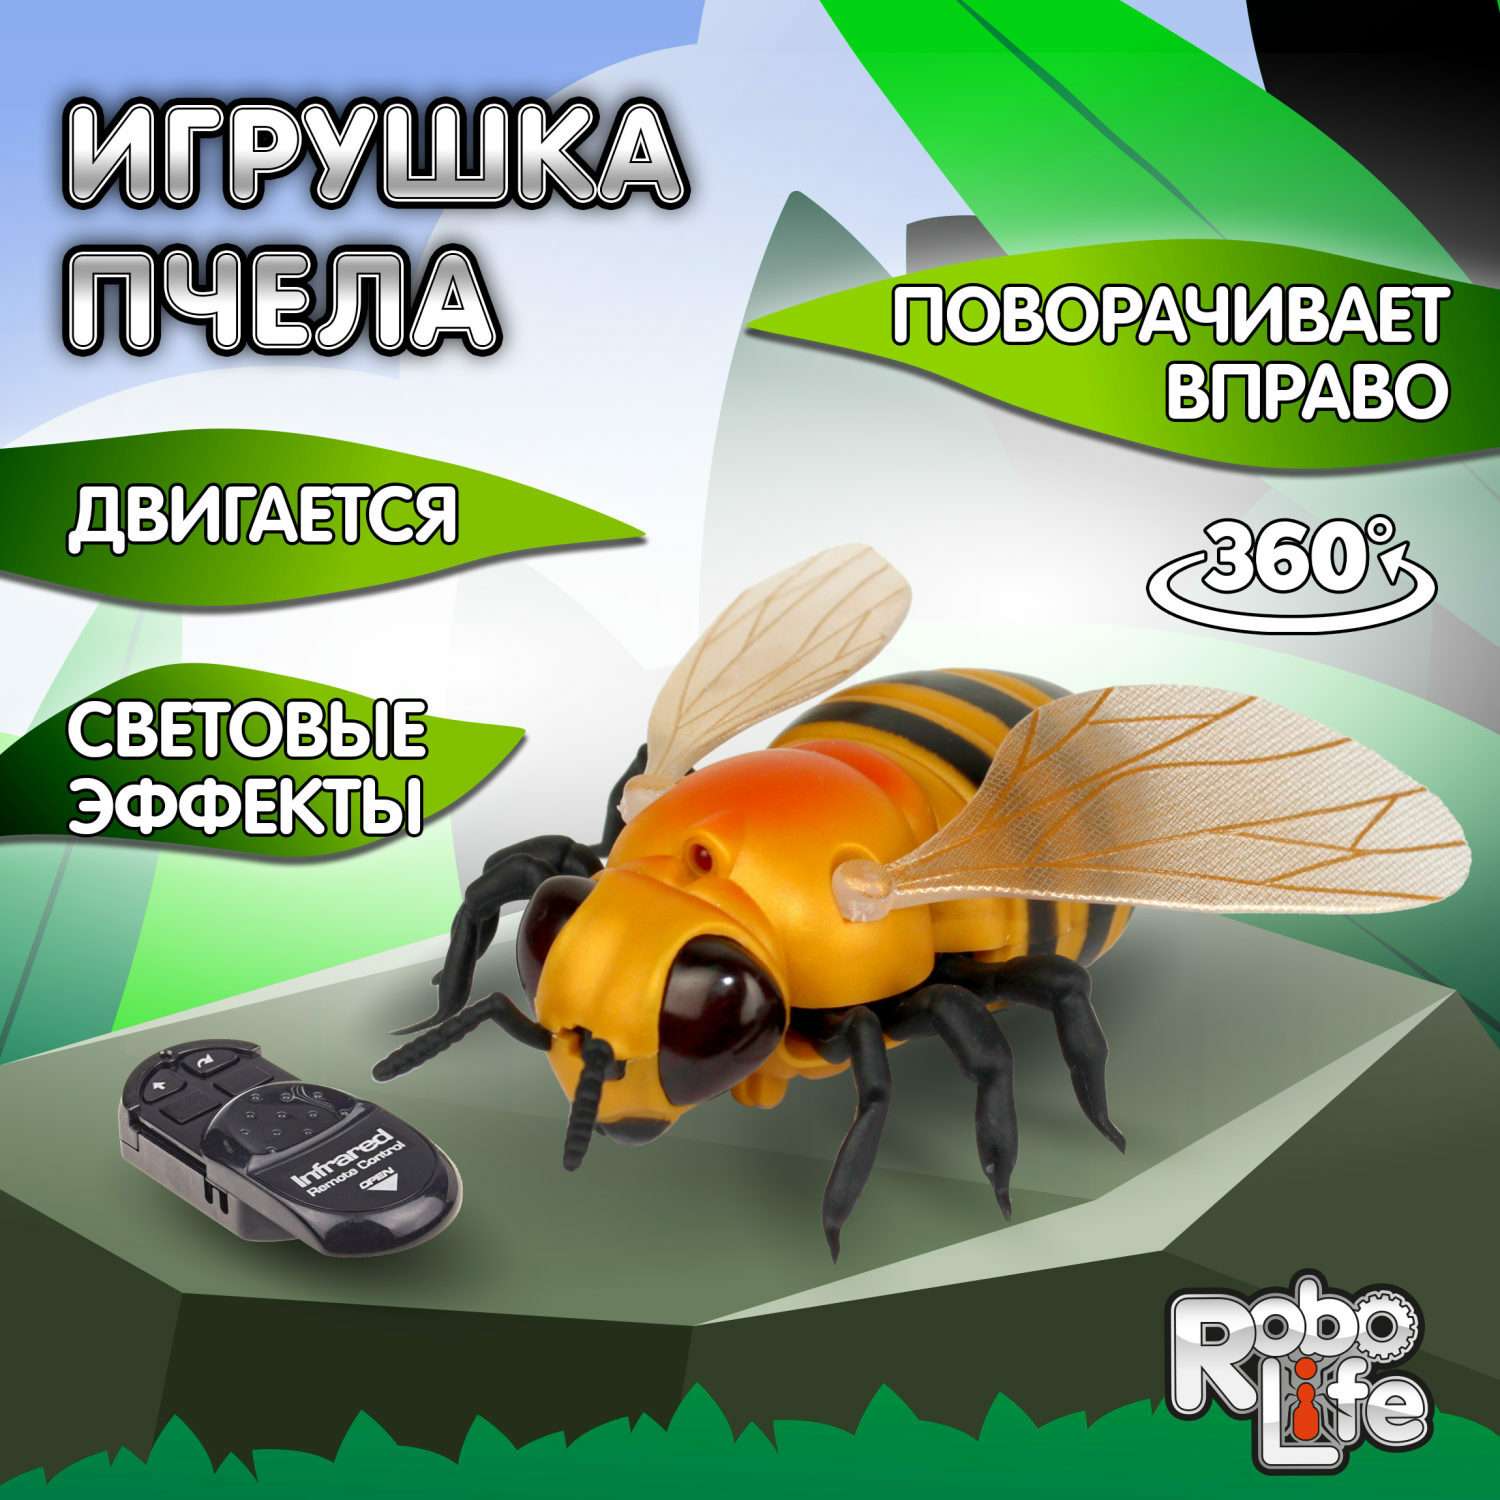 Интерактивная игрушка 1TOY Робо-пчела на ИК управлении с световыми эффектами - фото 1